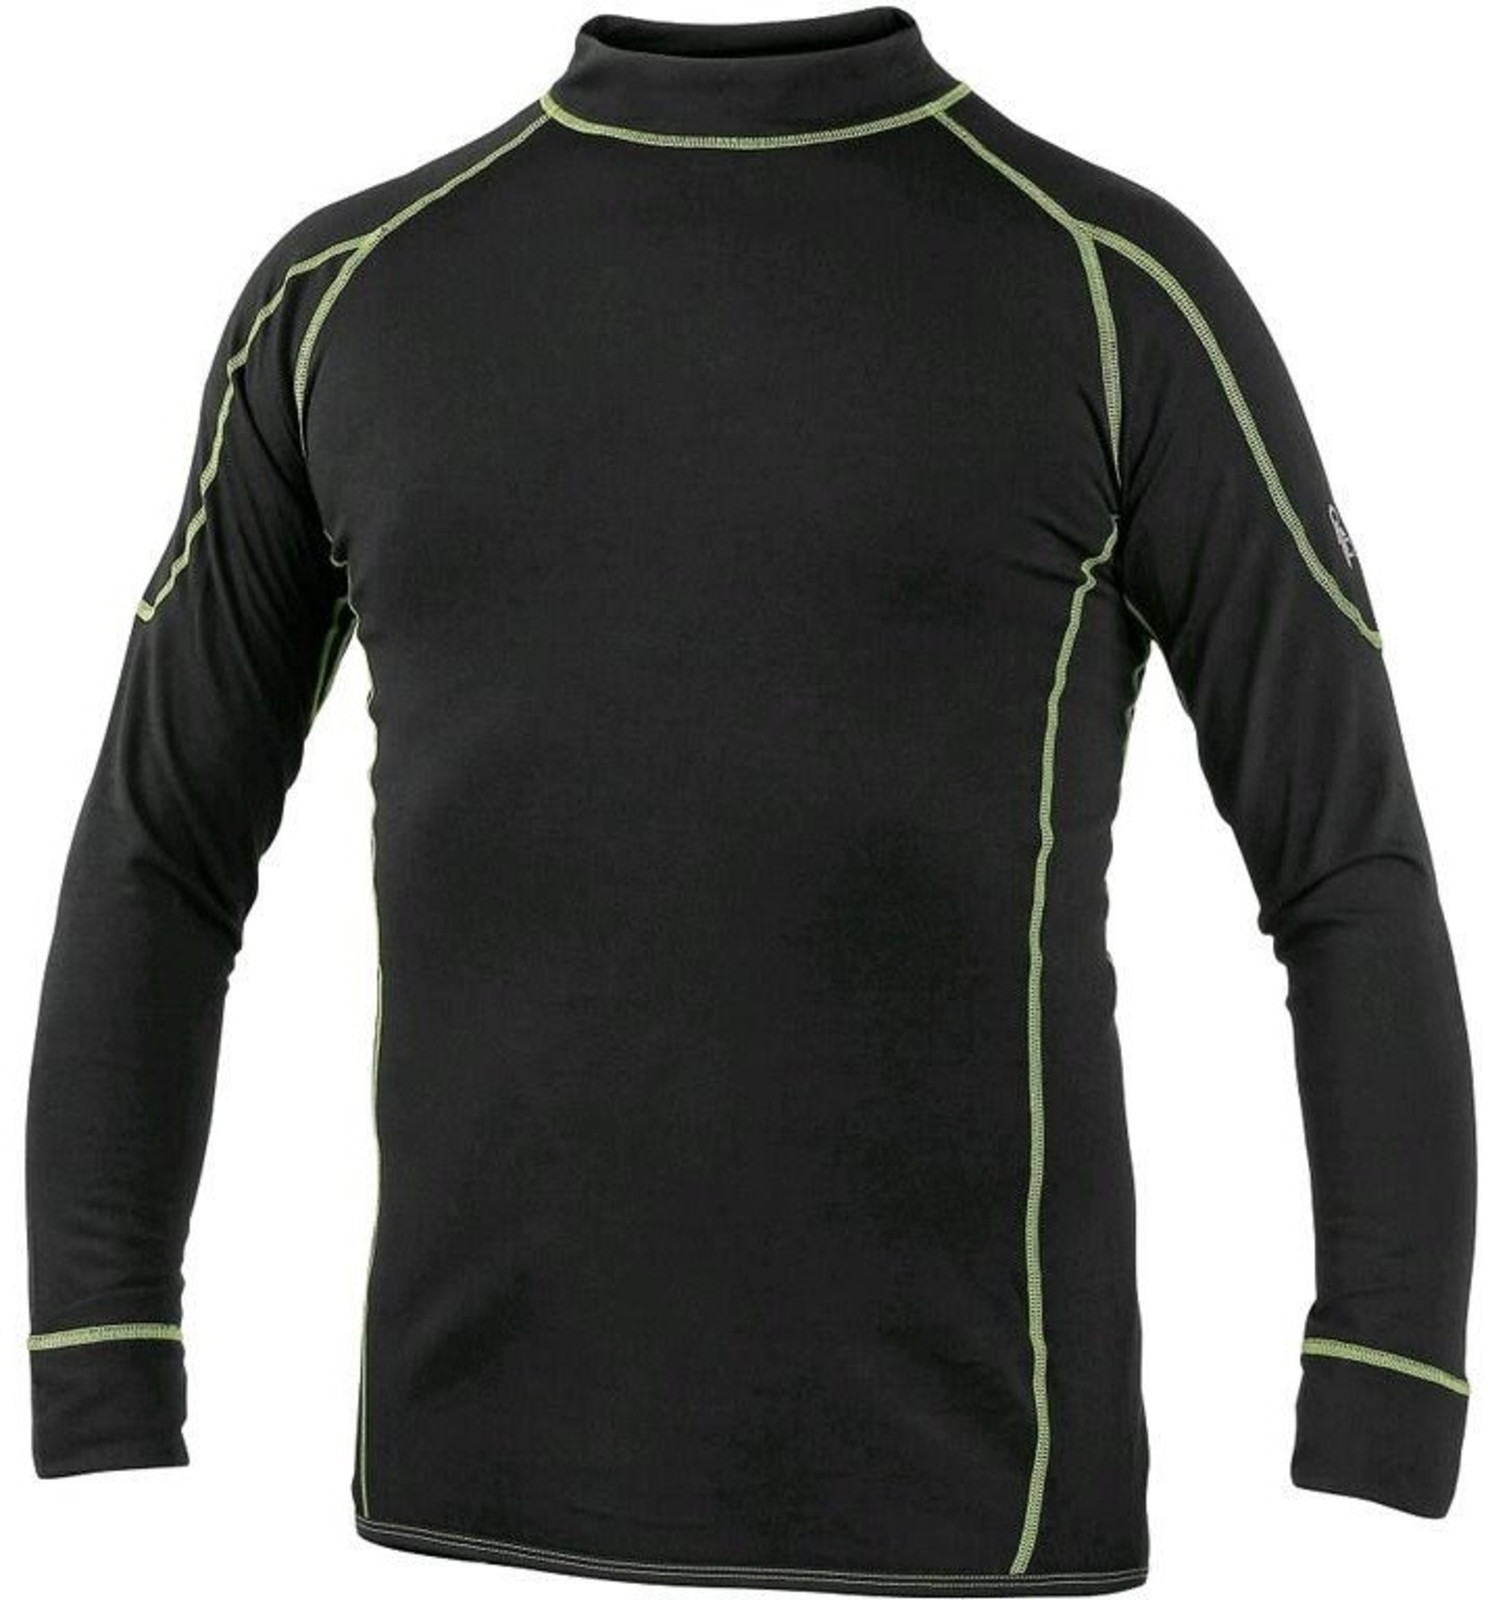 Detské termo tričko s dlhým rukávom CXS Reward - veľkosť: 130, farba: čierna/zelená